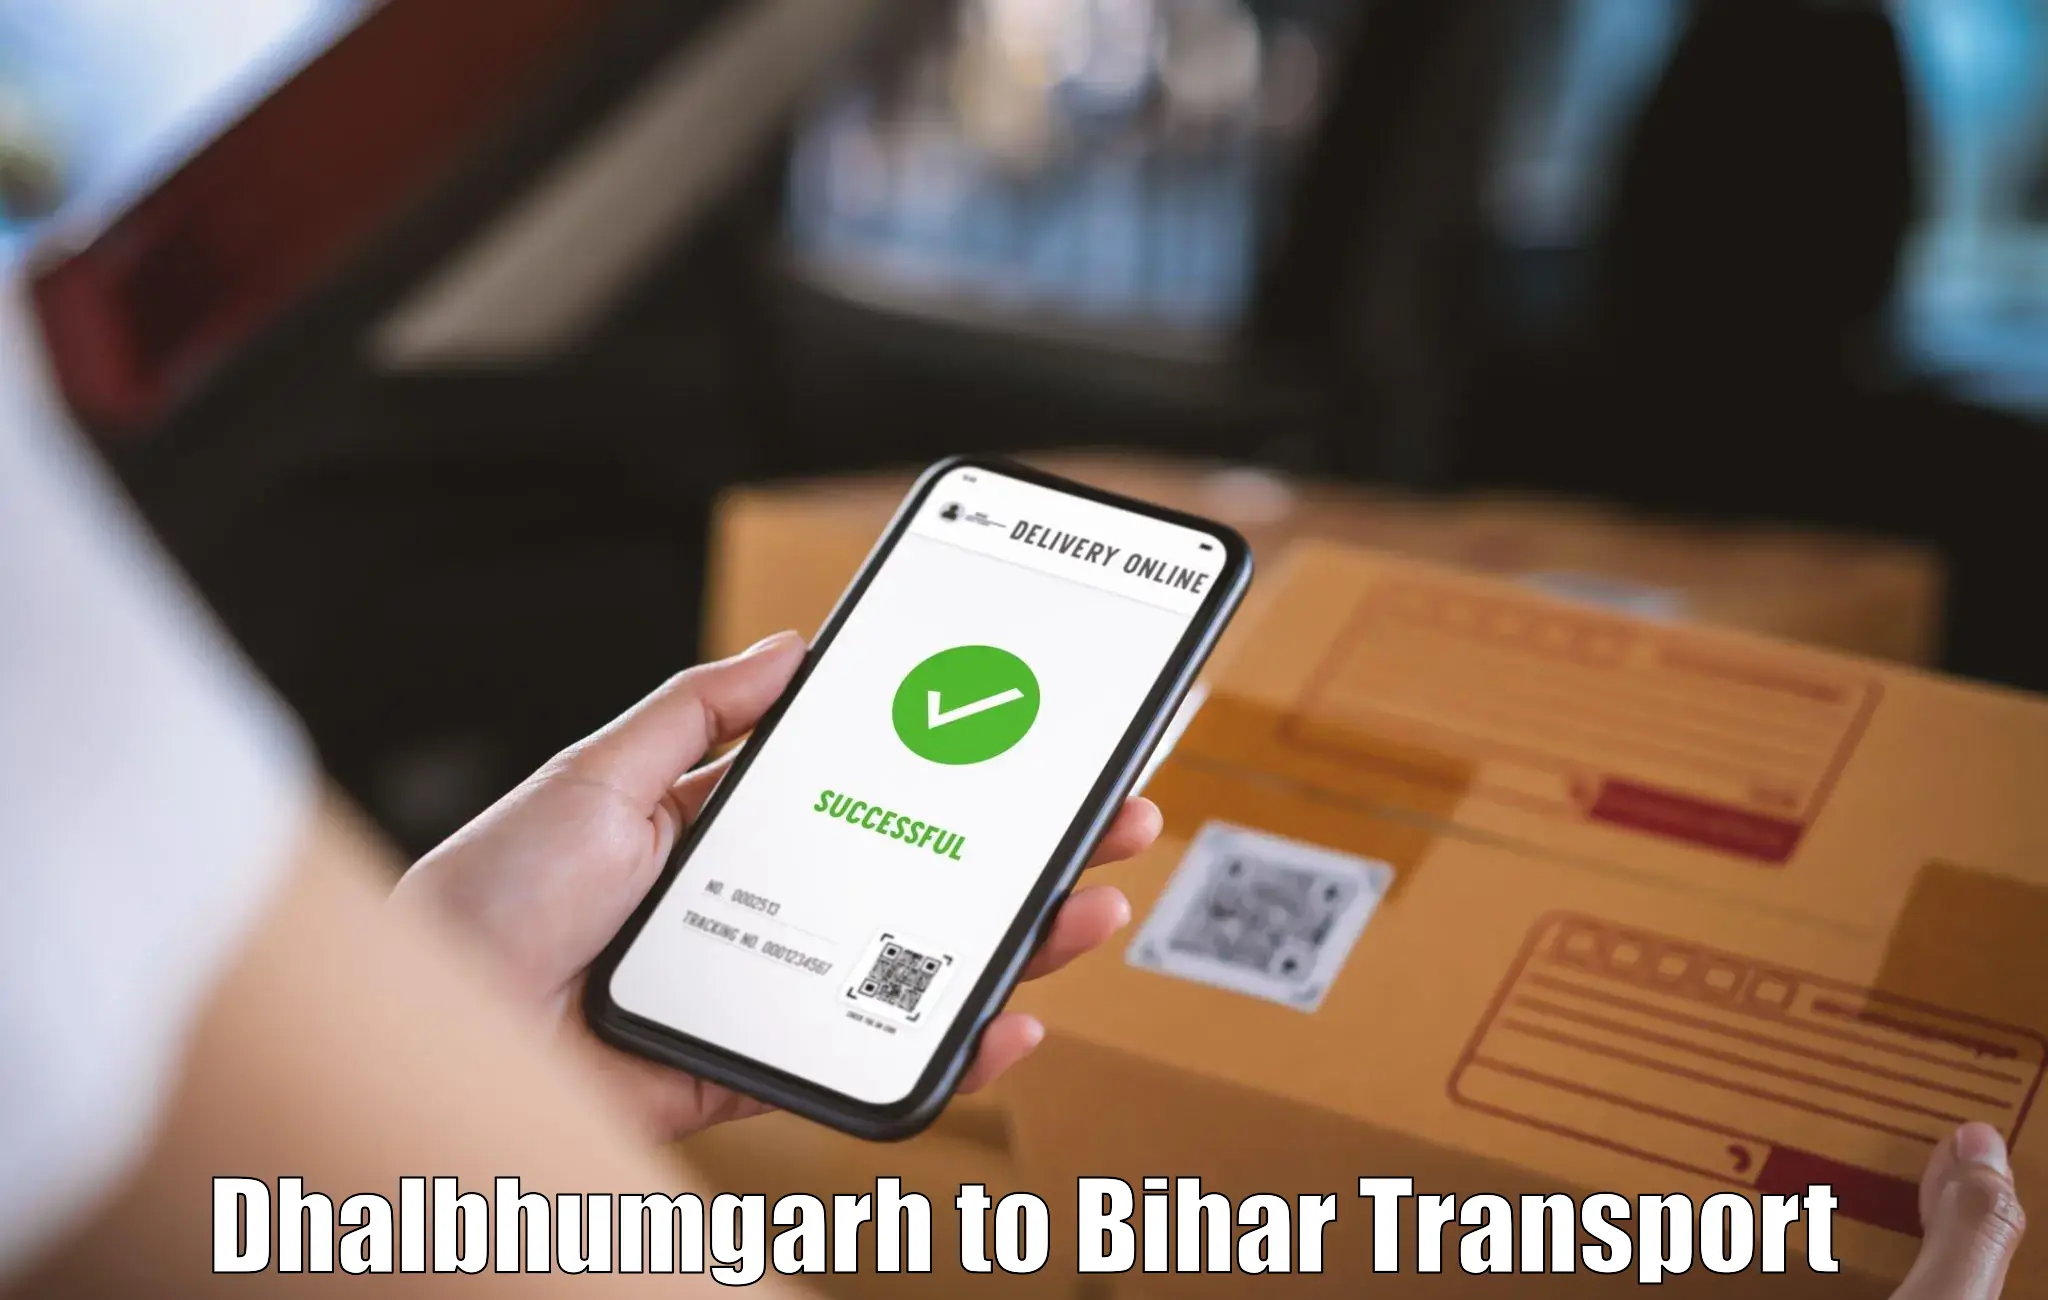 Shipping partner Dhalbhumgarh to Piro